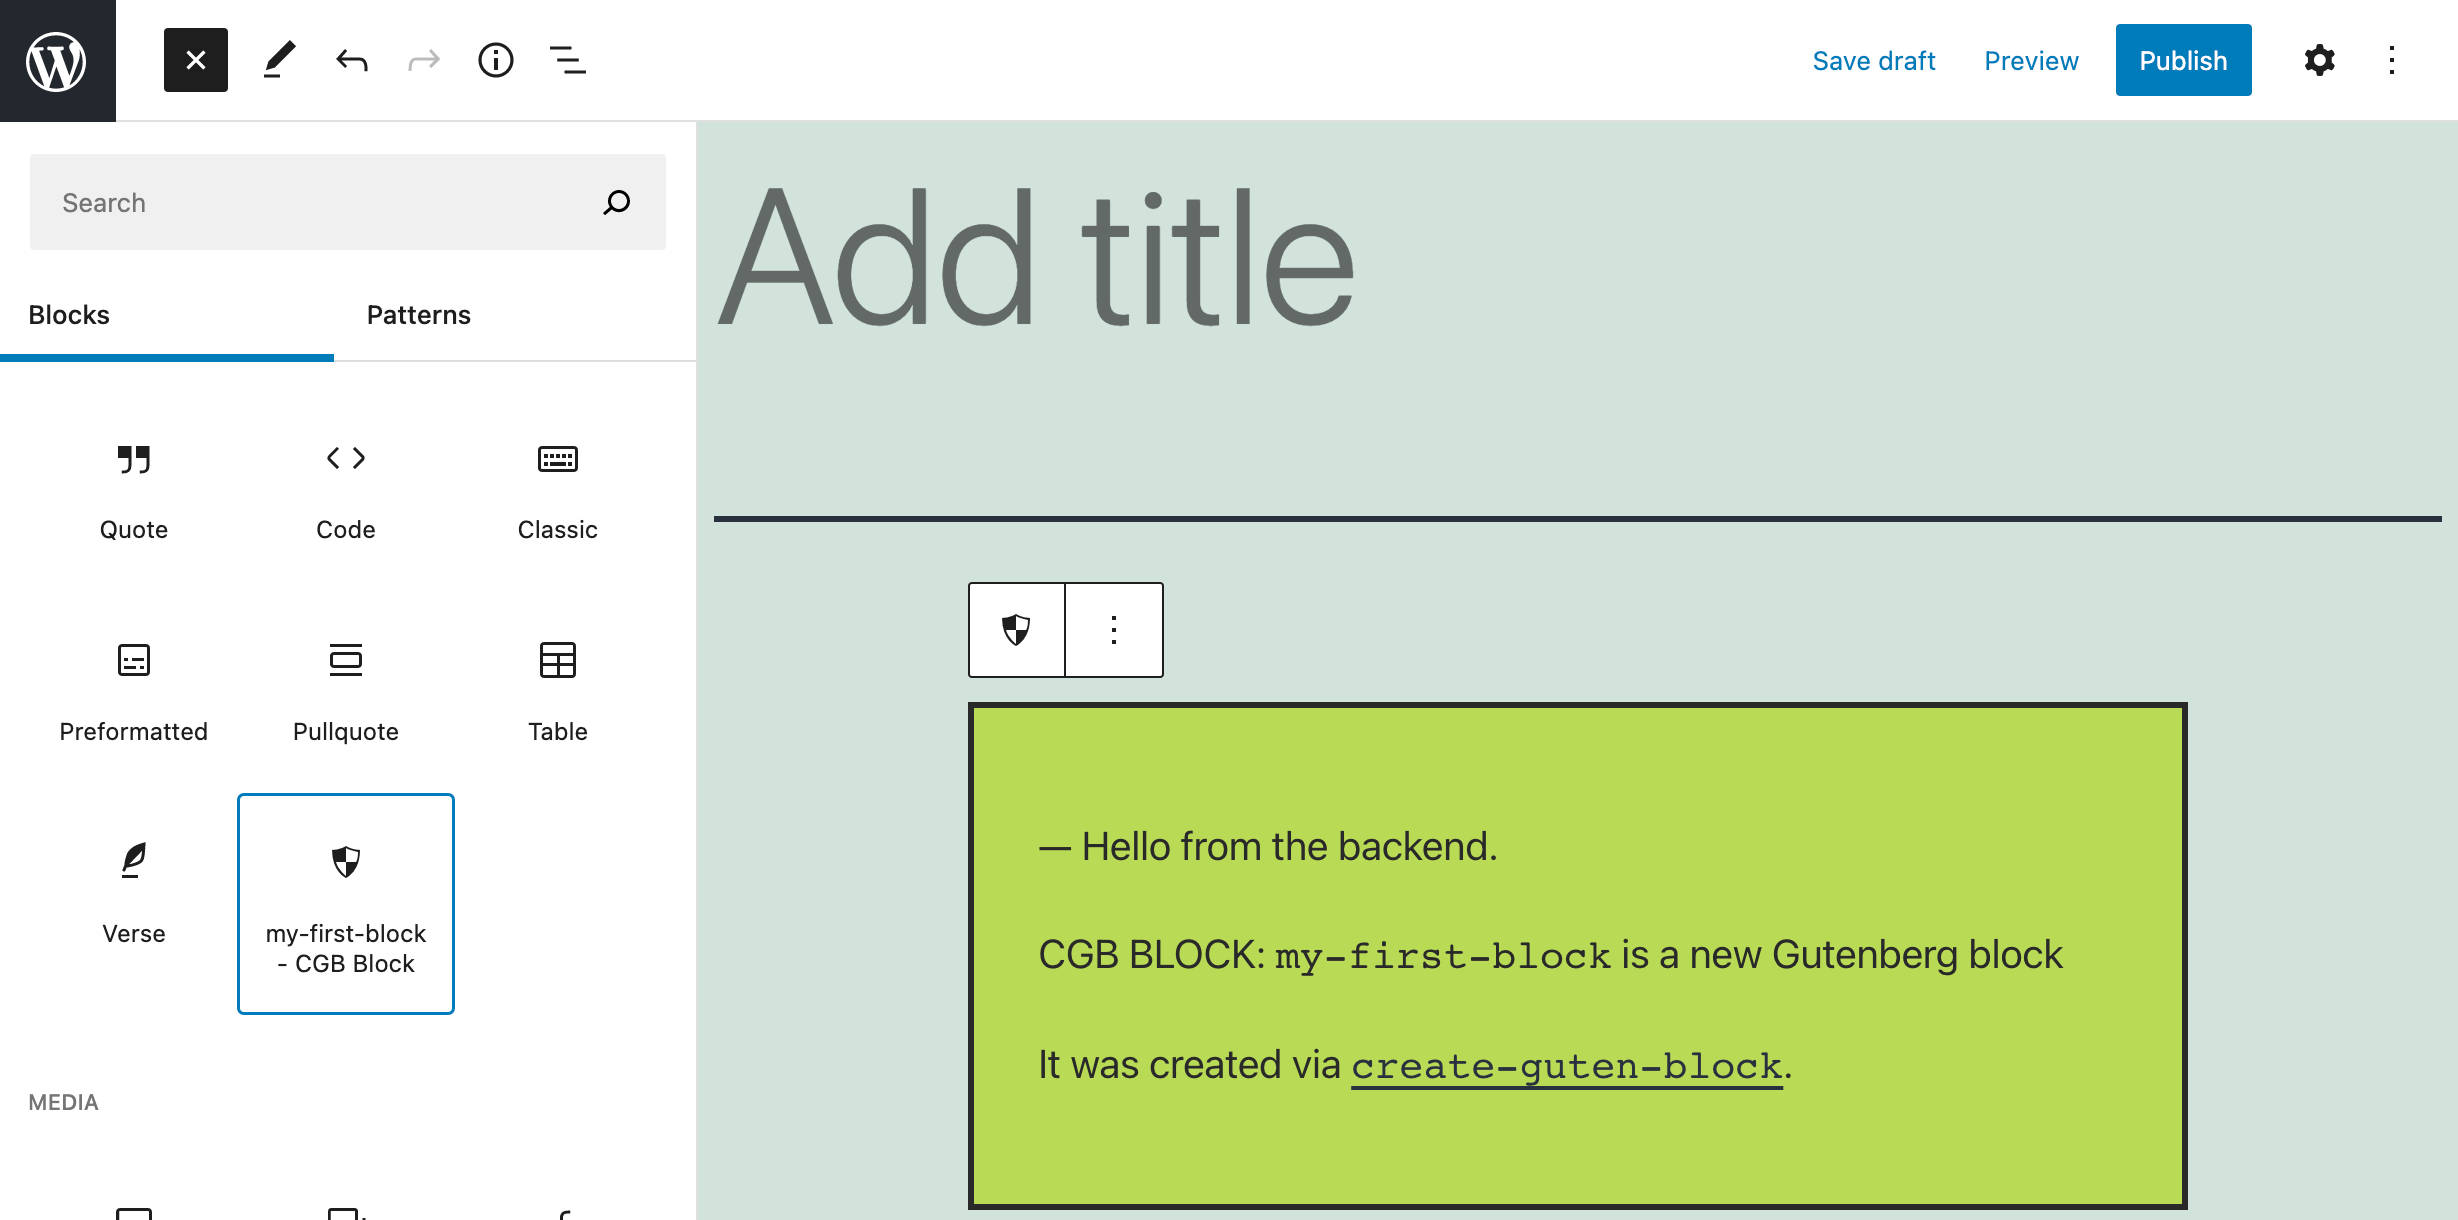 Un nuevo bloque creado con create-guten-block.